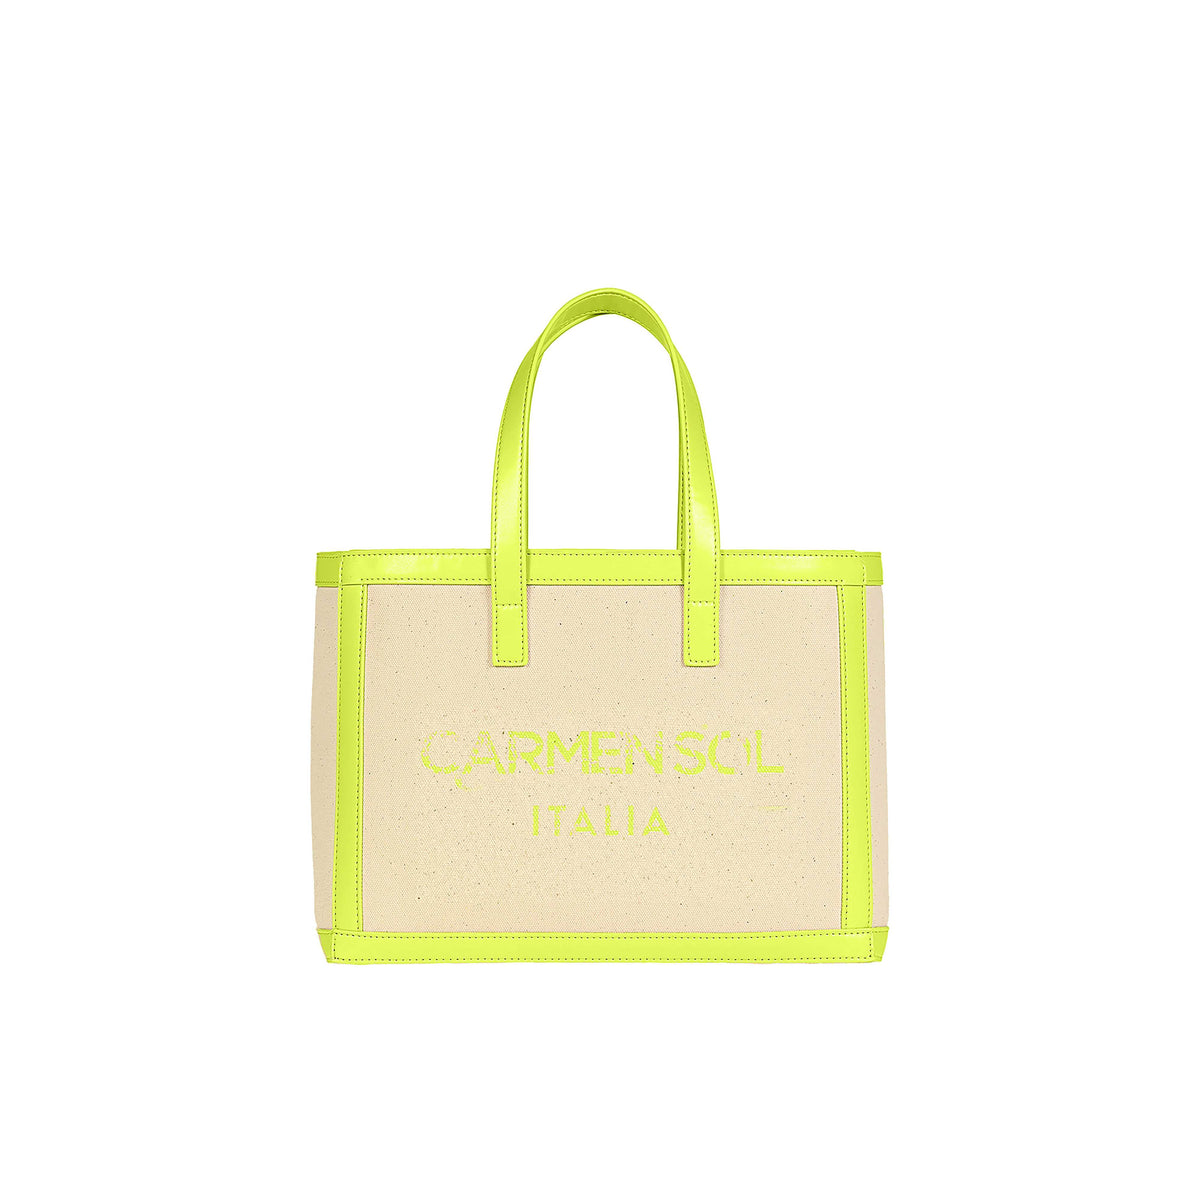 Carmen Sol mini canvas beach purse in color neon yellow